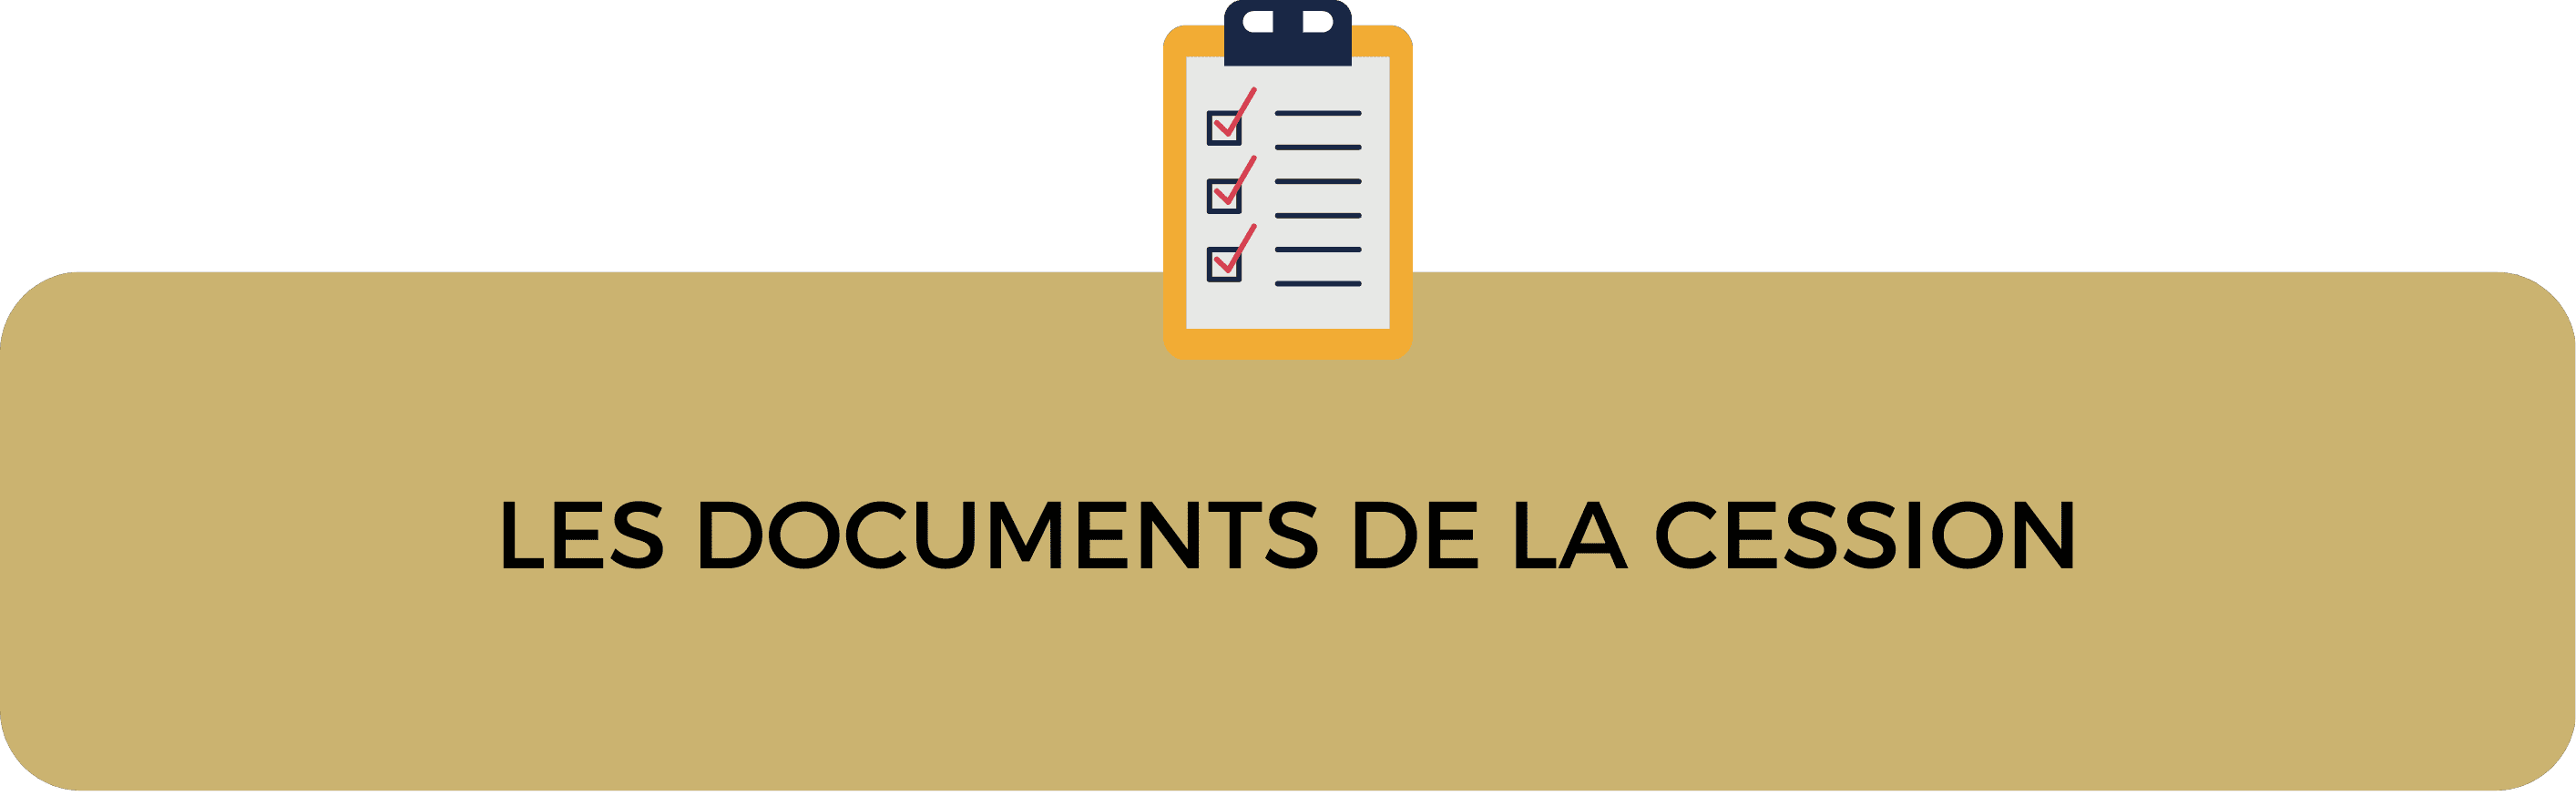 liste_documents_cession_fonds_commerce